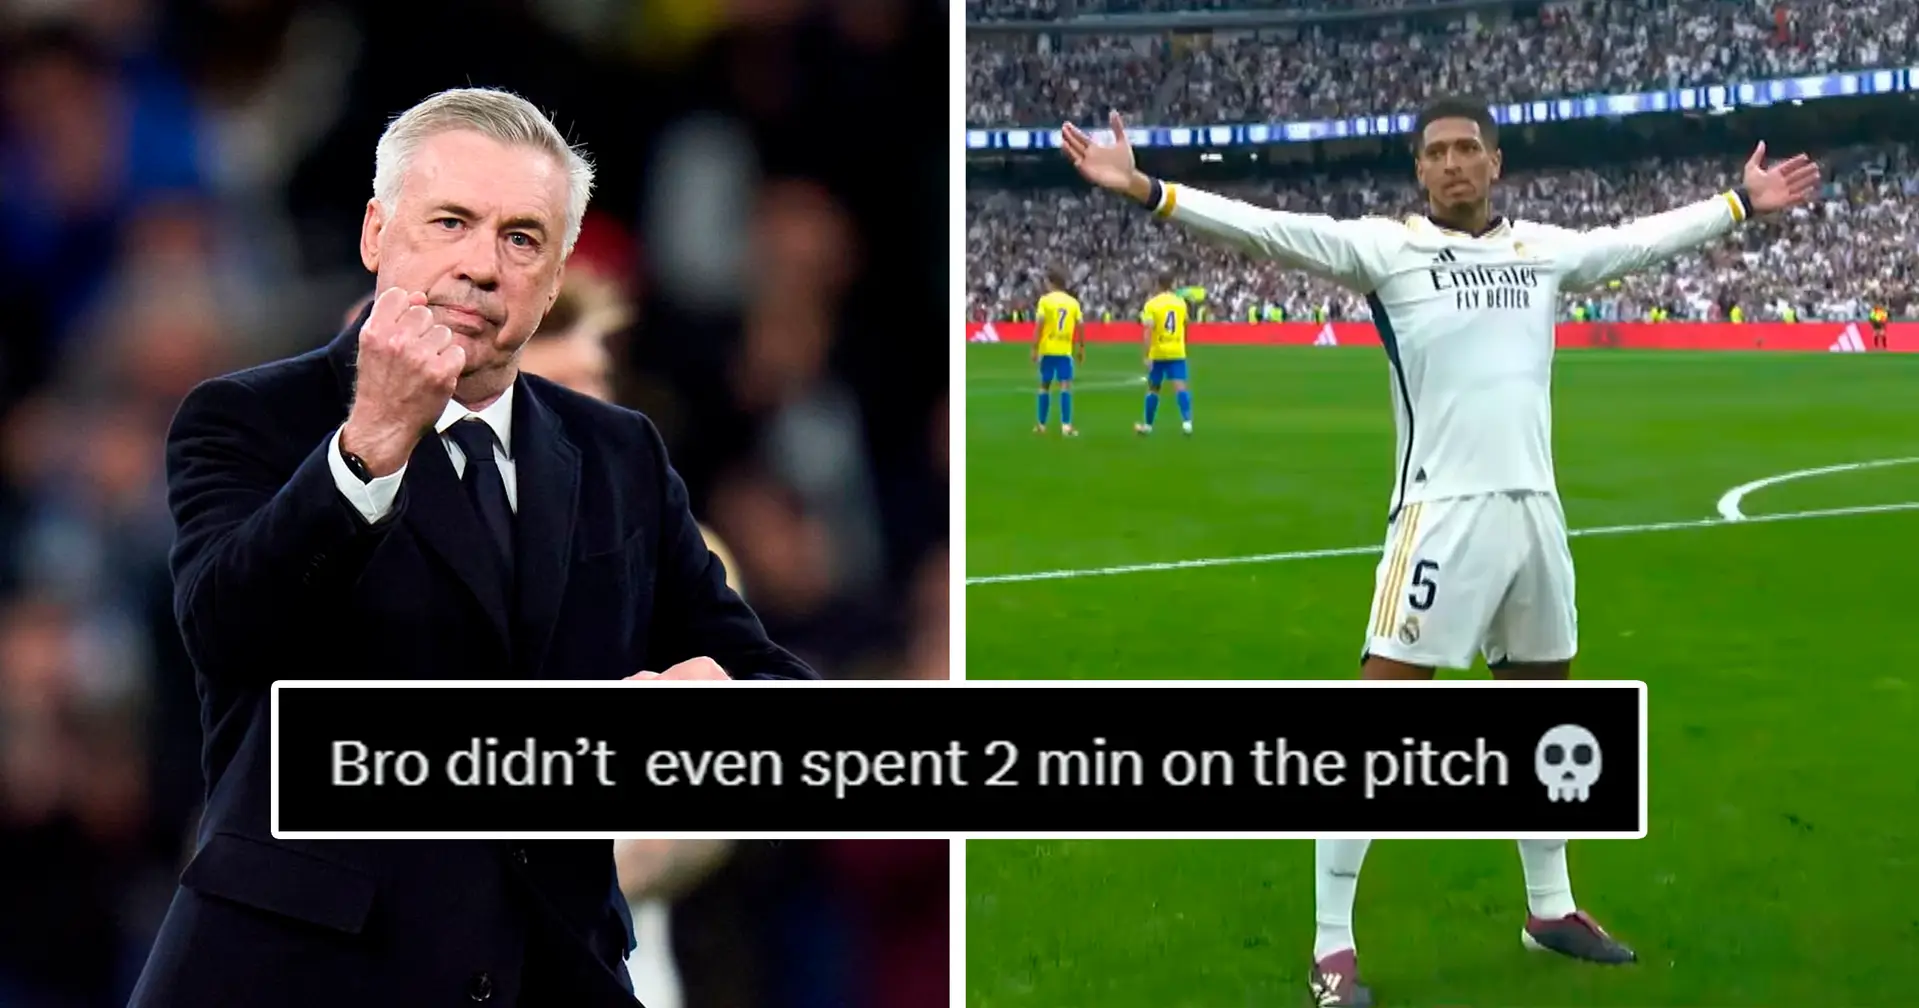 "Il est venu s'échauffer": les fans du Real Madrid réagissent au but de Bellingham moins de 2 mins après son entrée sur le terrain